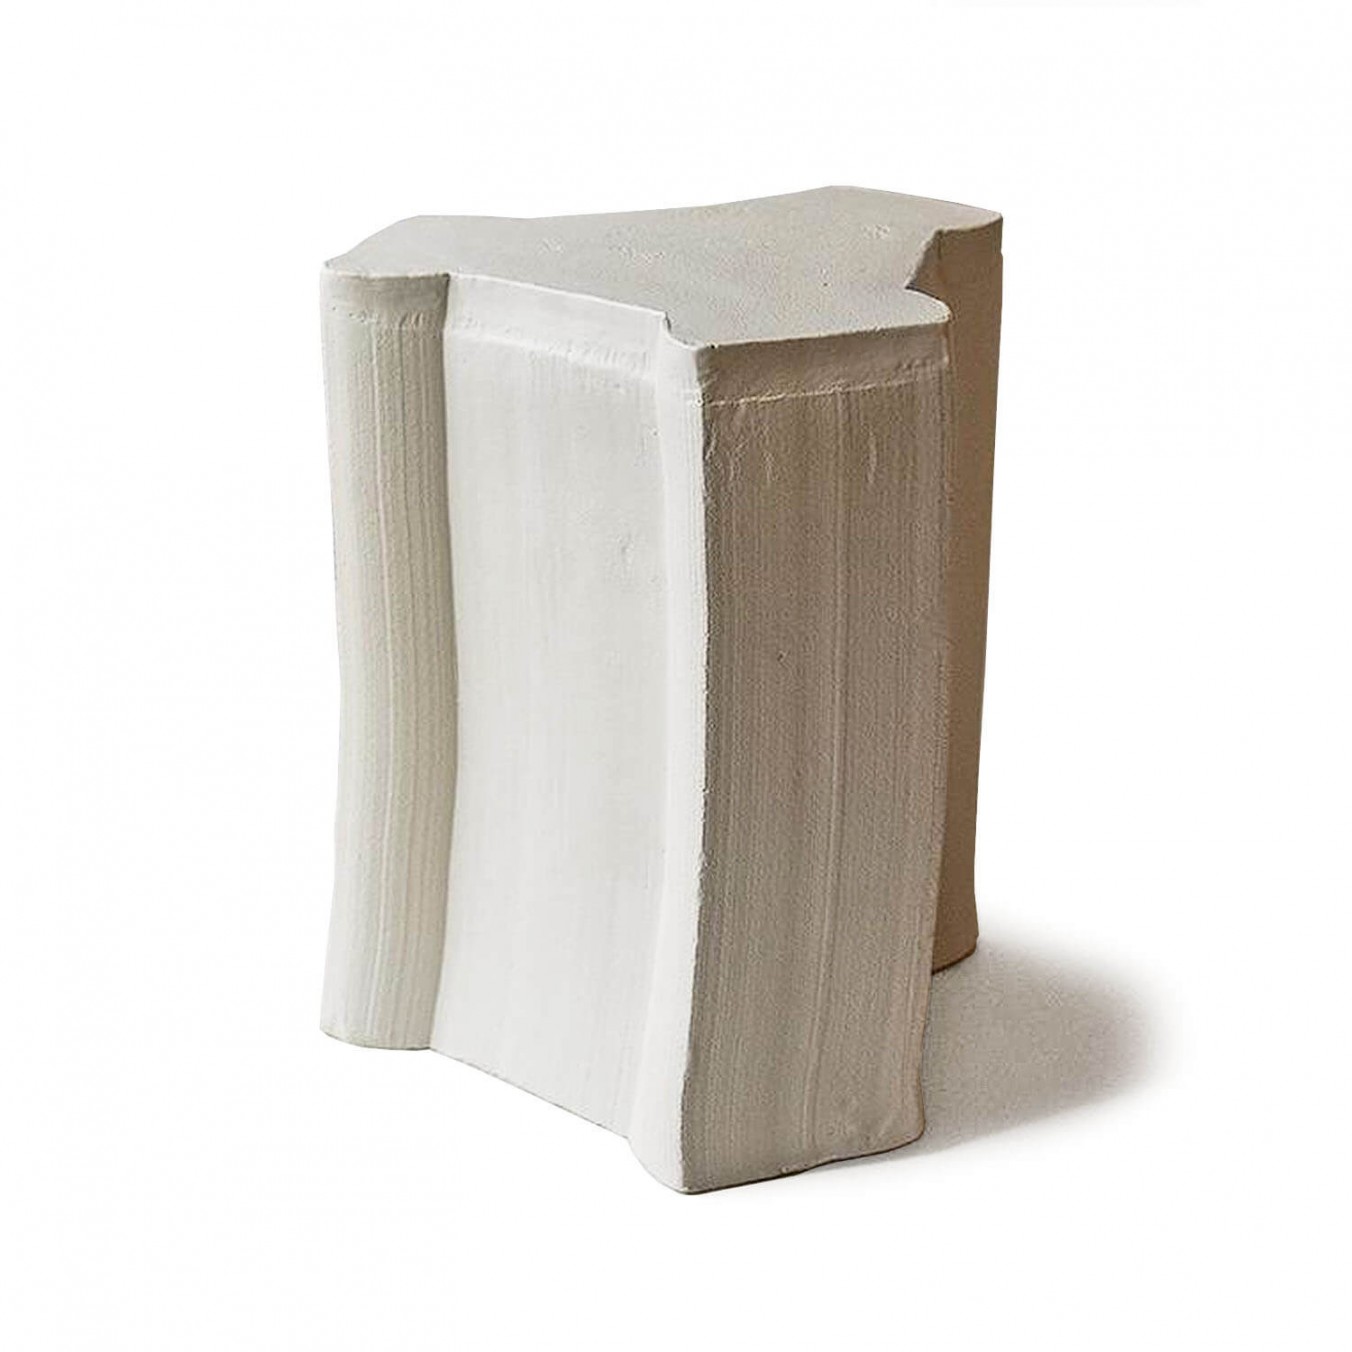 pressed stool with glaze | model 5